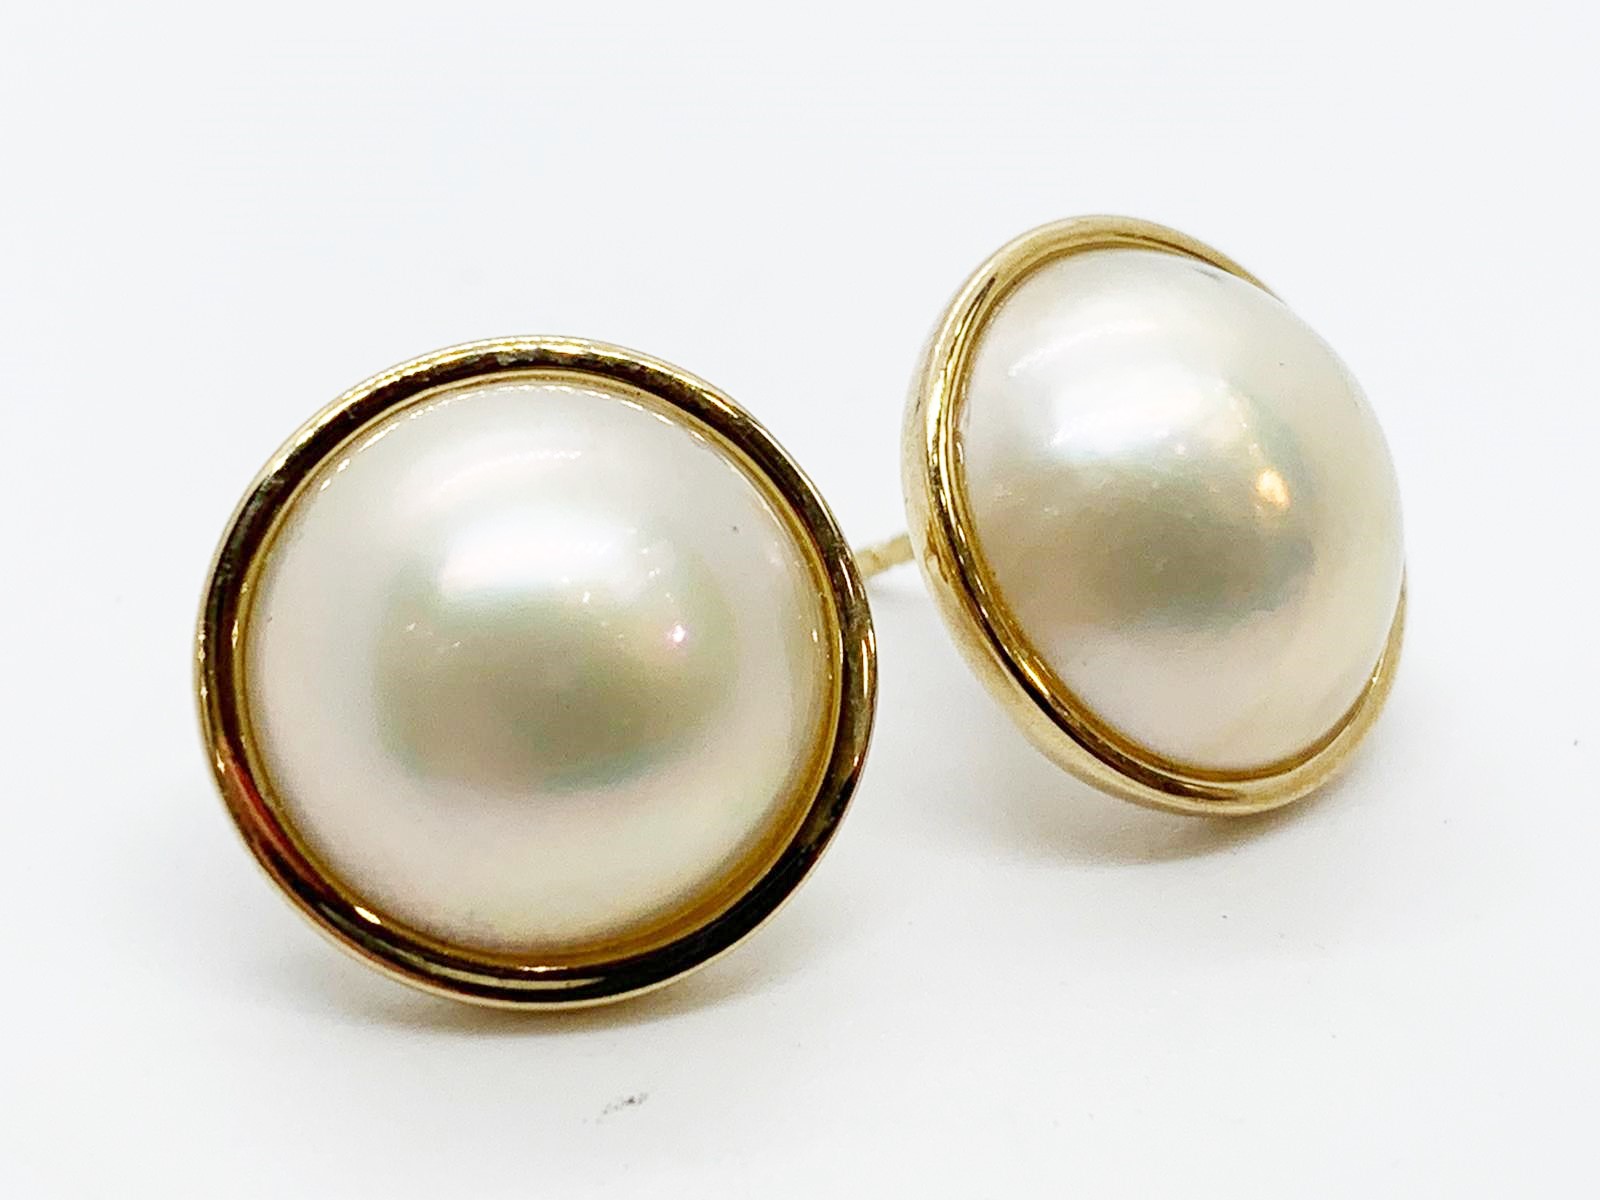 9ct pearl earrings - Image 2 of 2